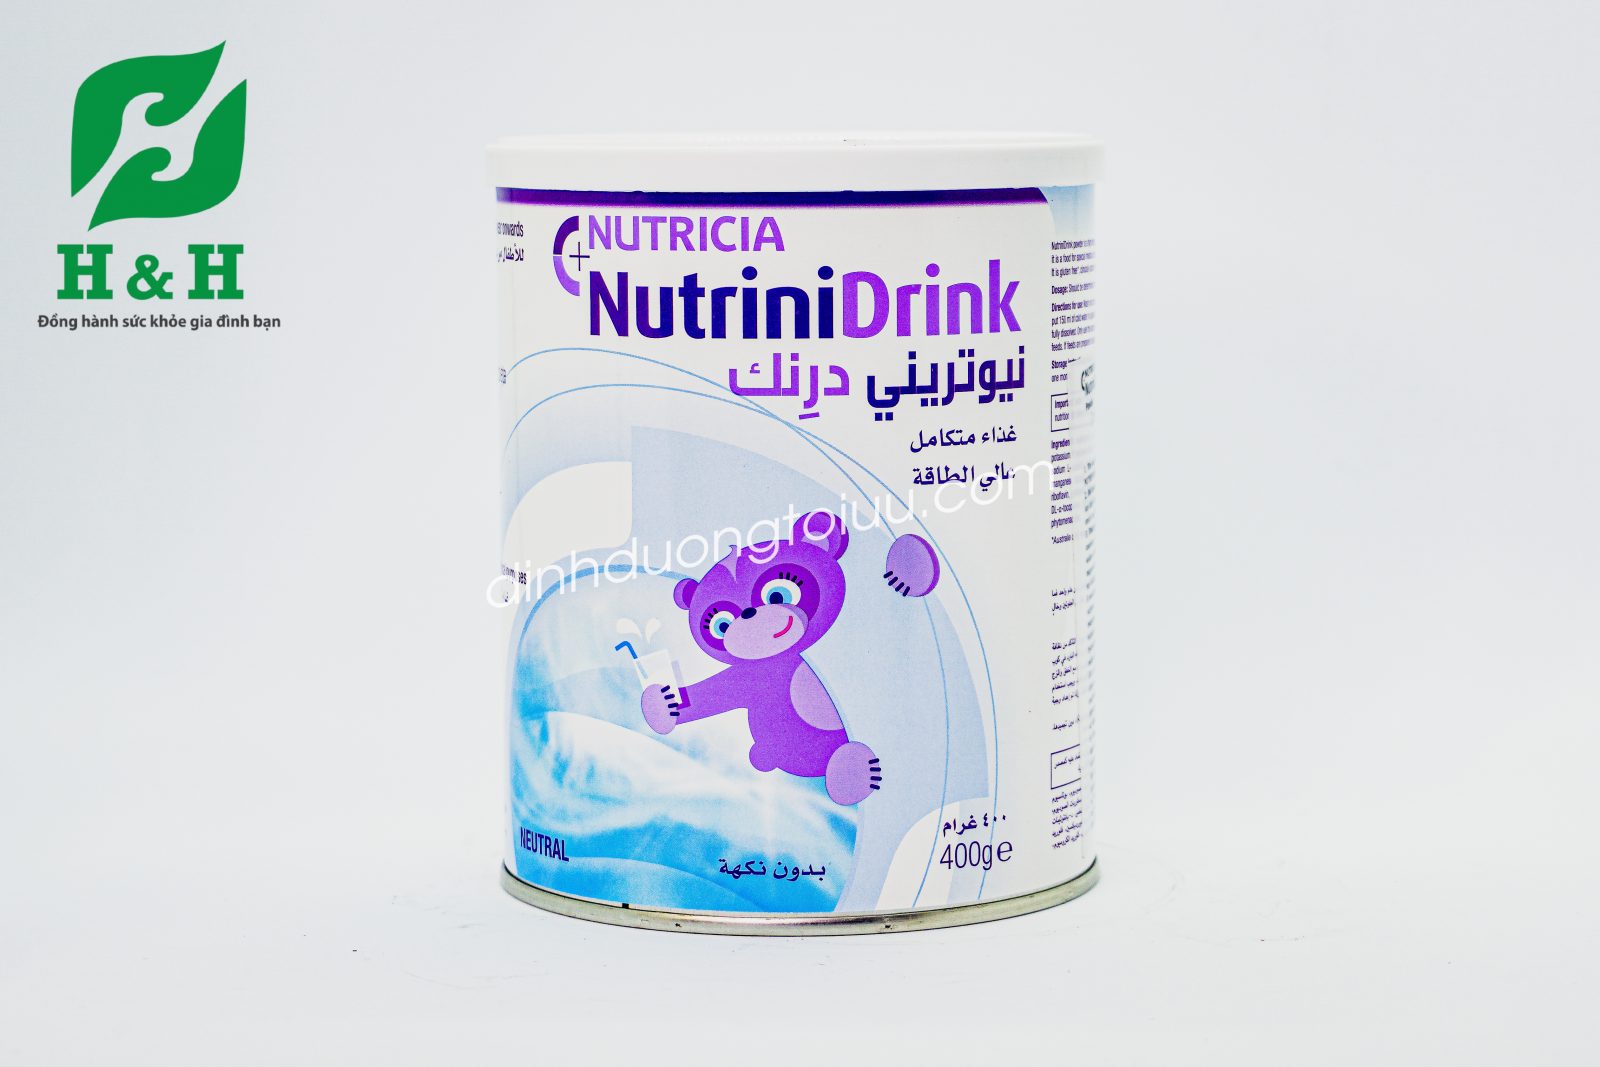 Sữa Nutrinidrink – Công thức đặc biệt cho trẻ suy dinh dưỡng